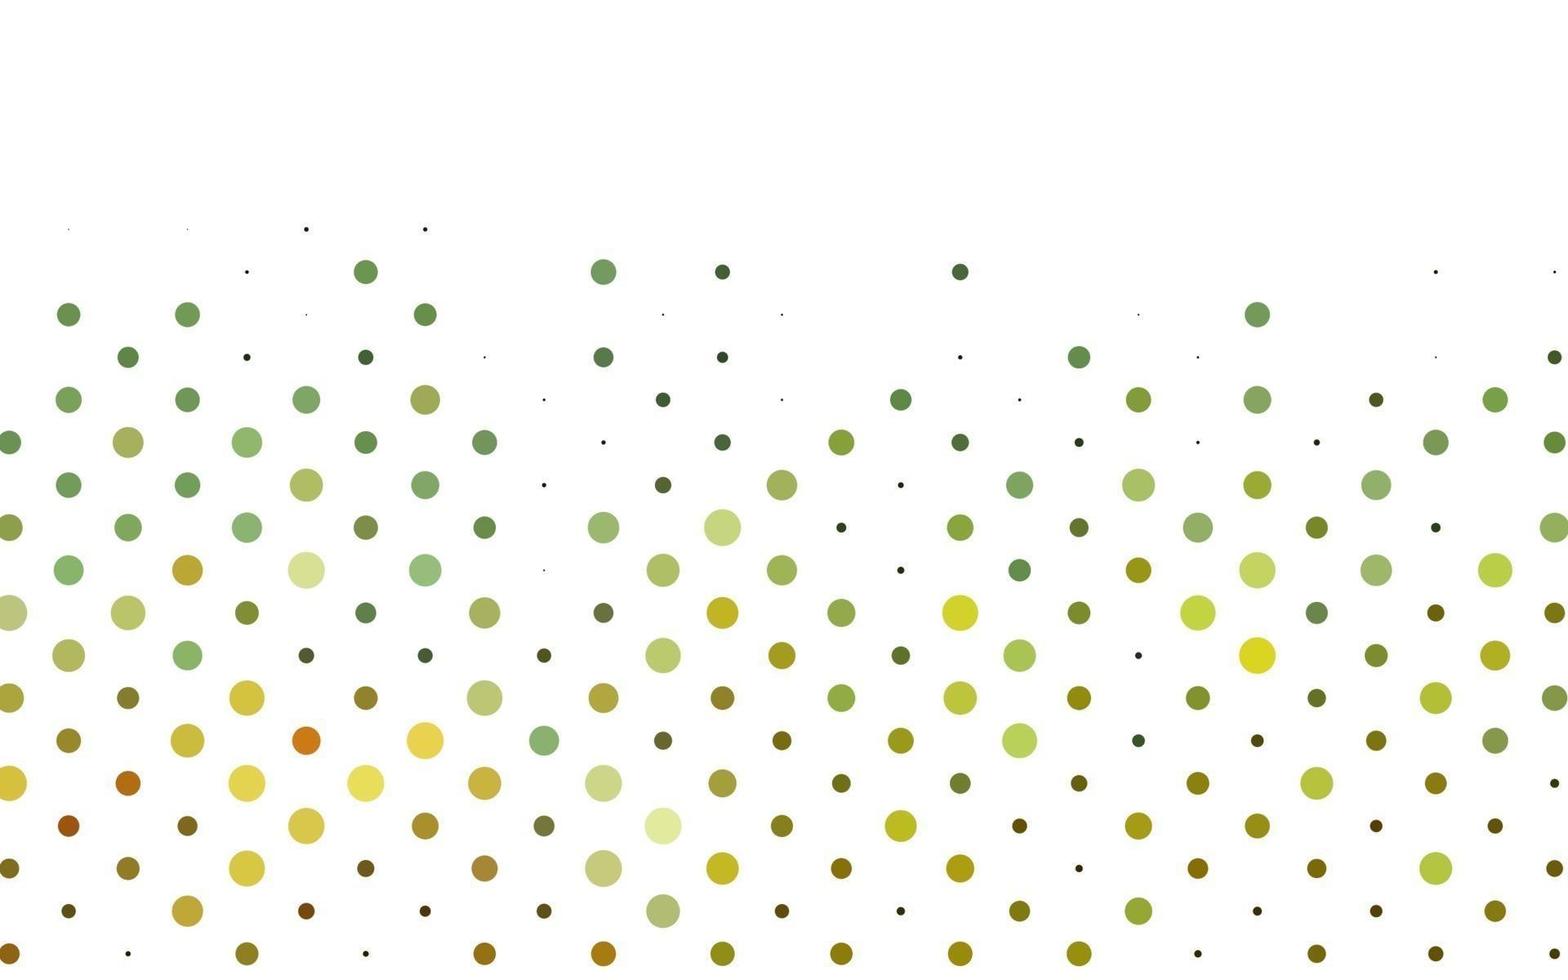 Telón de fondo de vector verde claro con puntos.